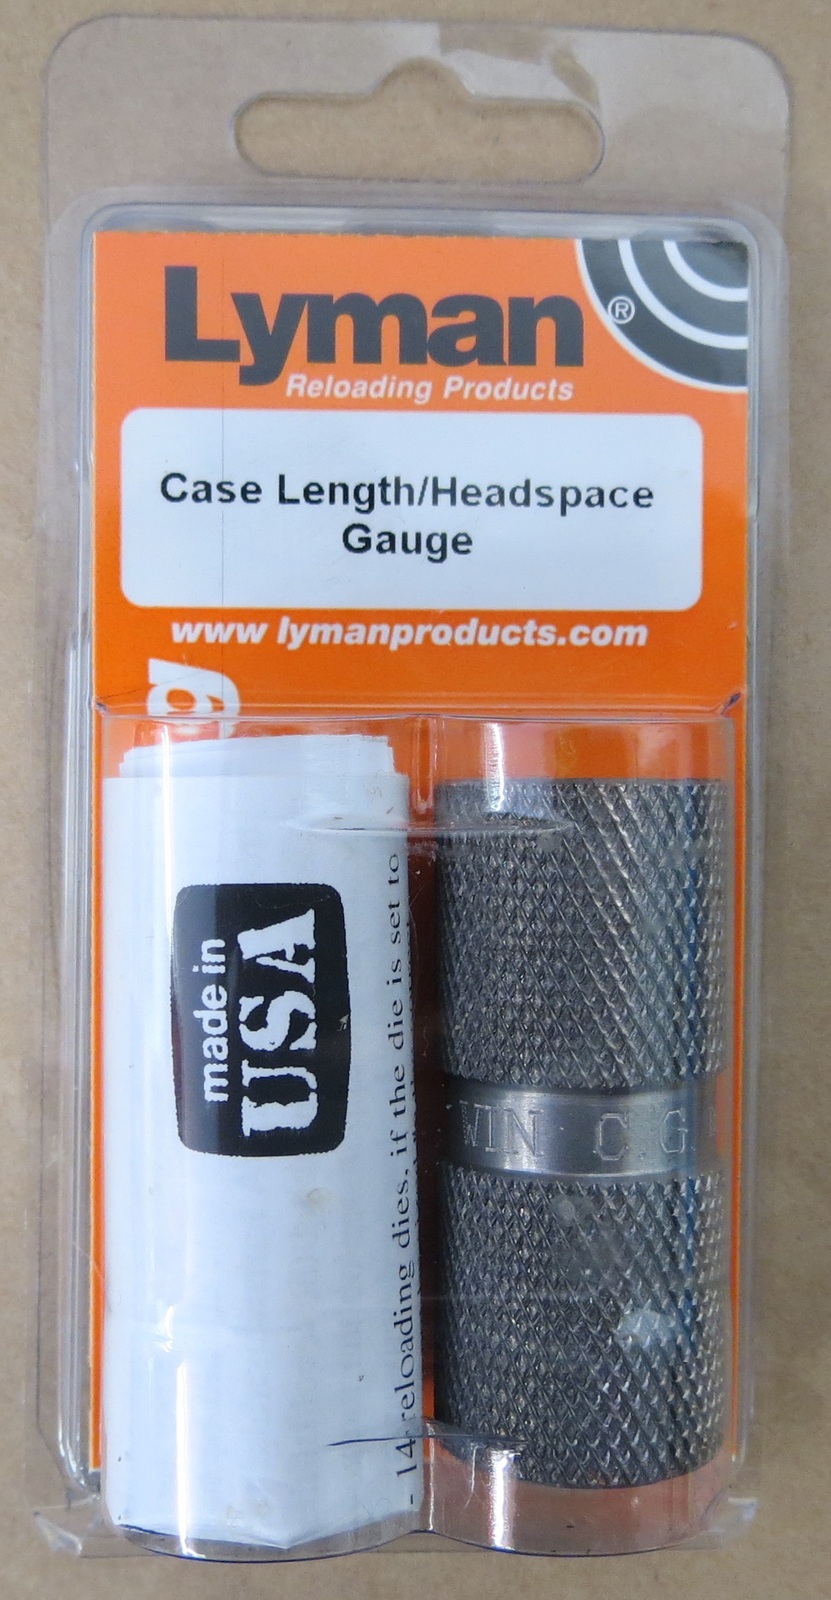 Lyman Reloading 243 Win Case Length/Headspace Gauge 